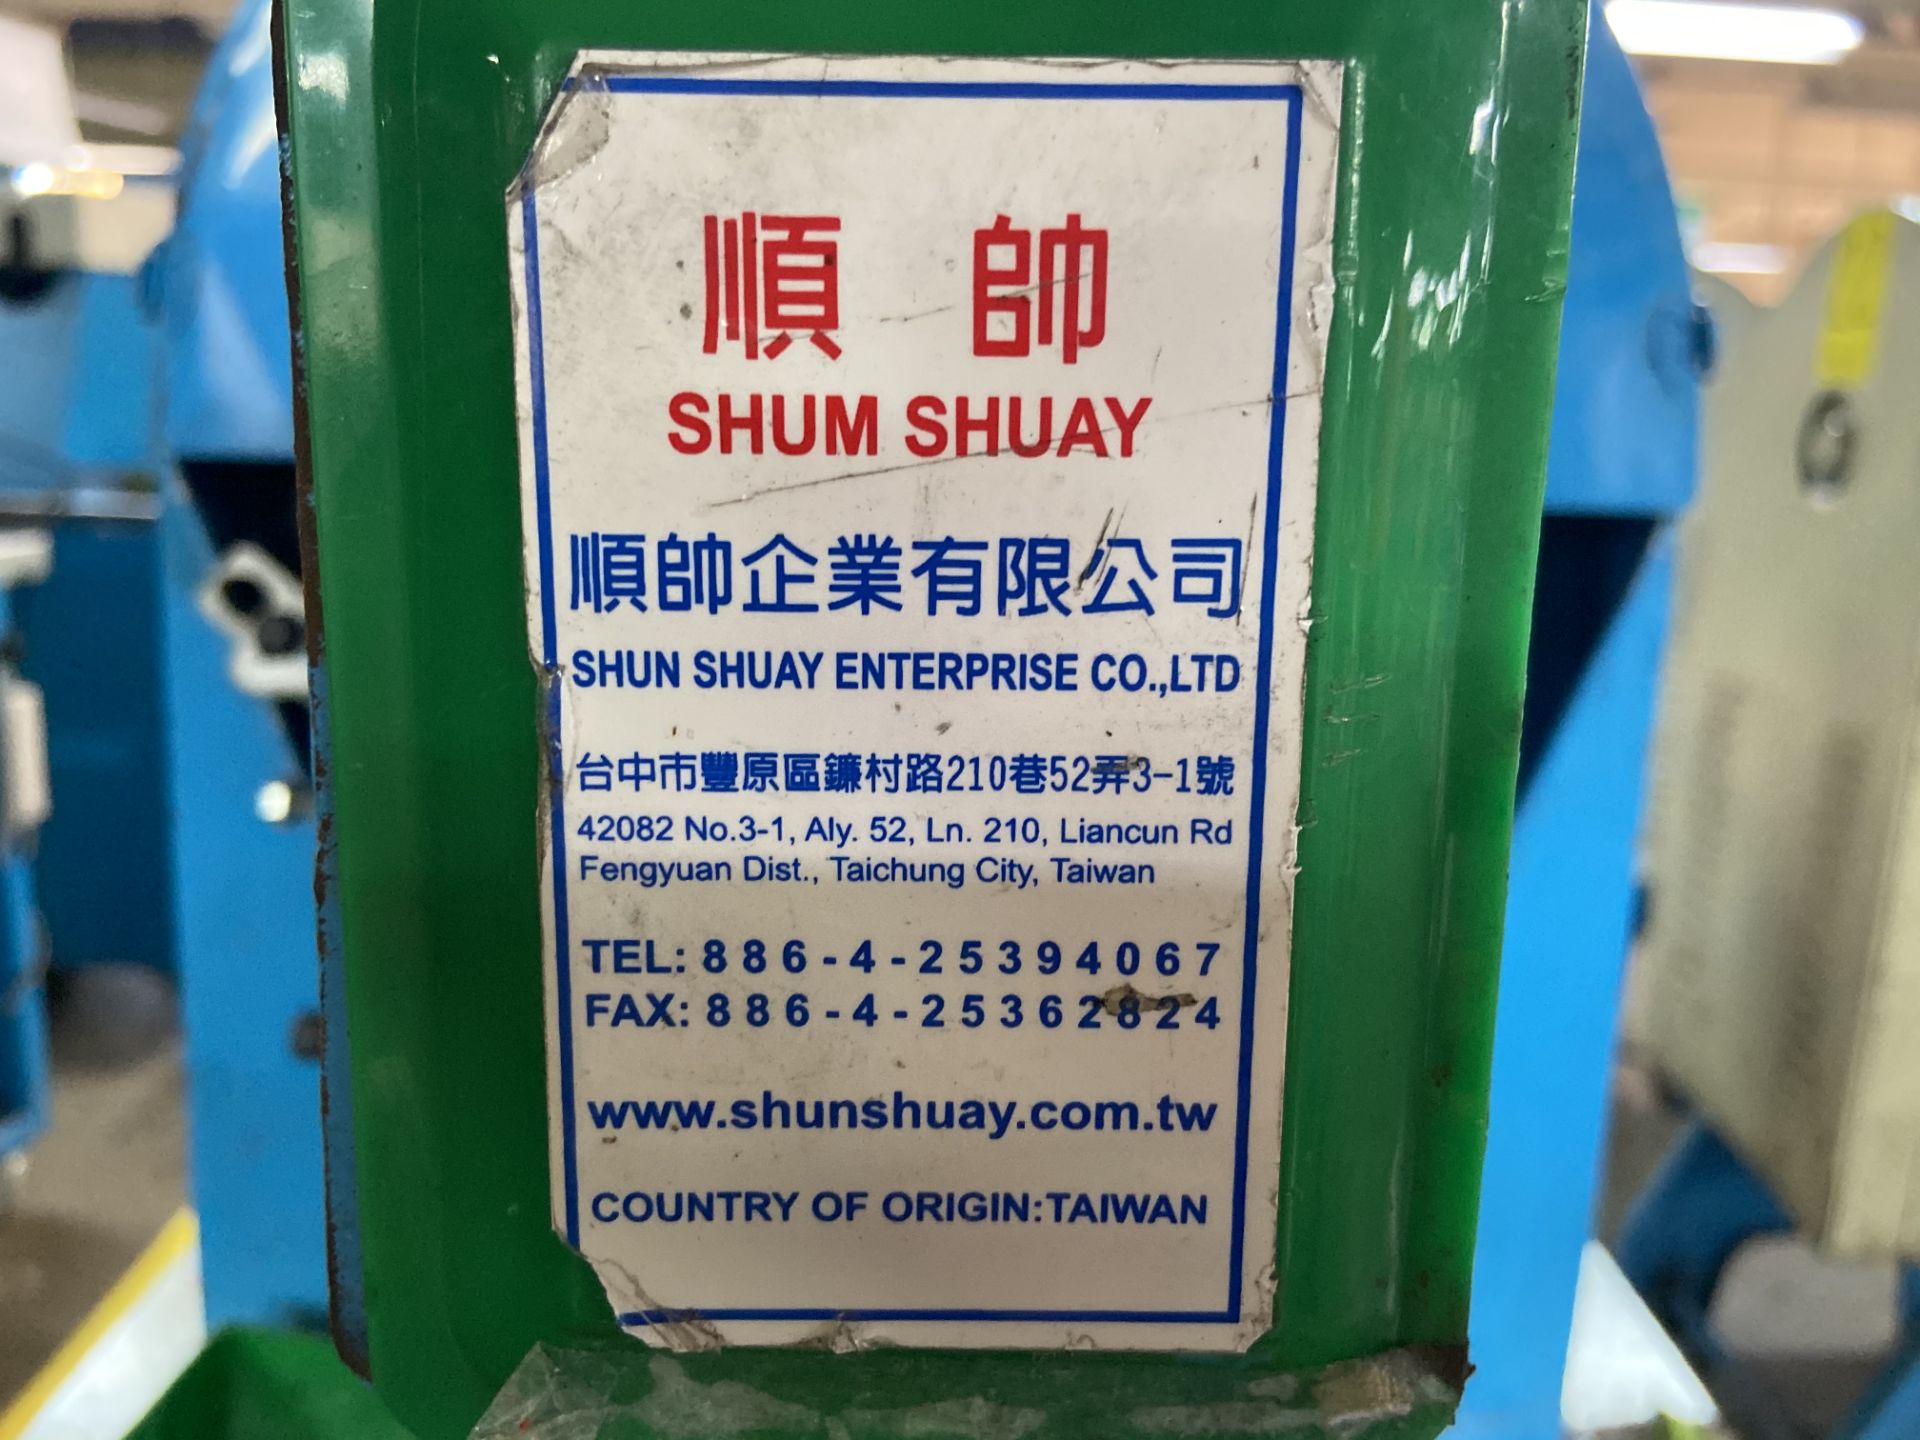 Prensa de grommet marca Shum Shuay Enterprise - Image 10 of 12